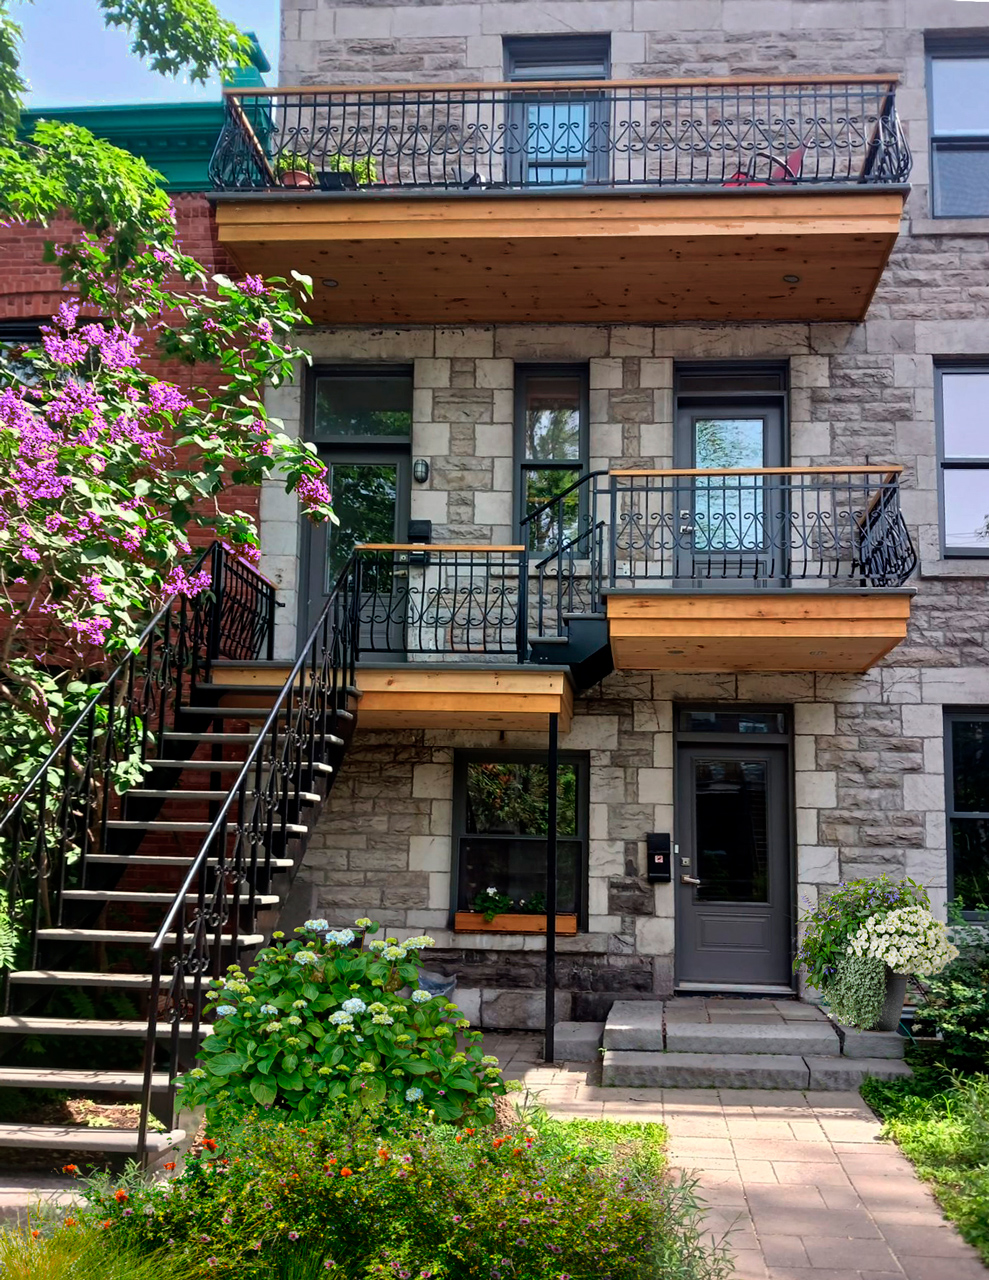 Escalier Mtl - Fabriquant d'escalier extériuer à Montréal - Vue d’une façade de triplex aux escaliers et balcons en bois